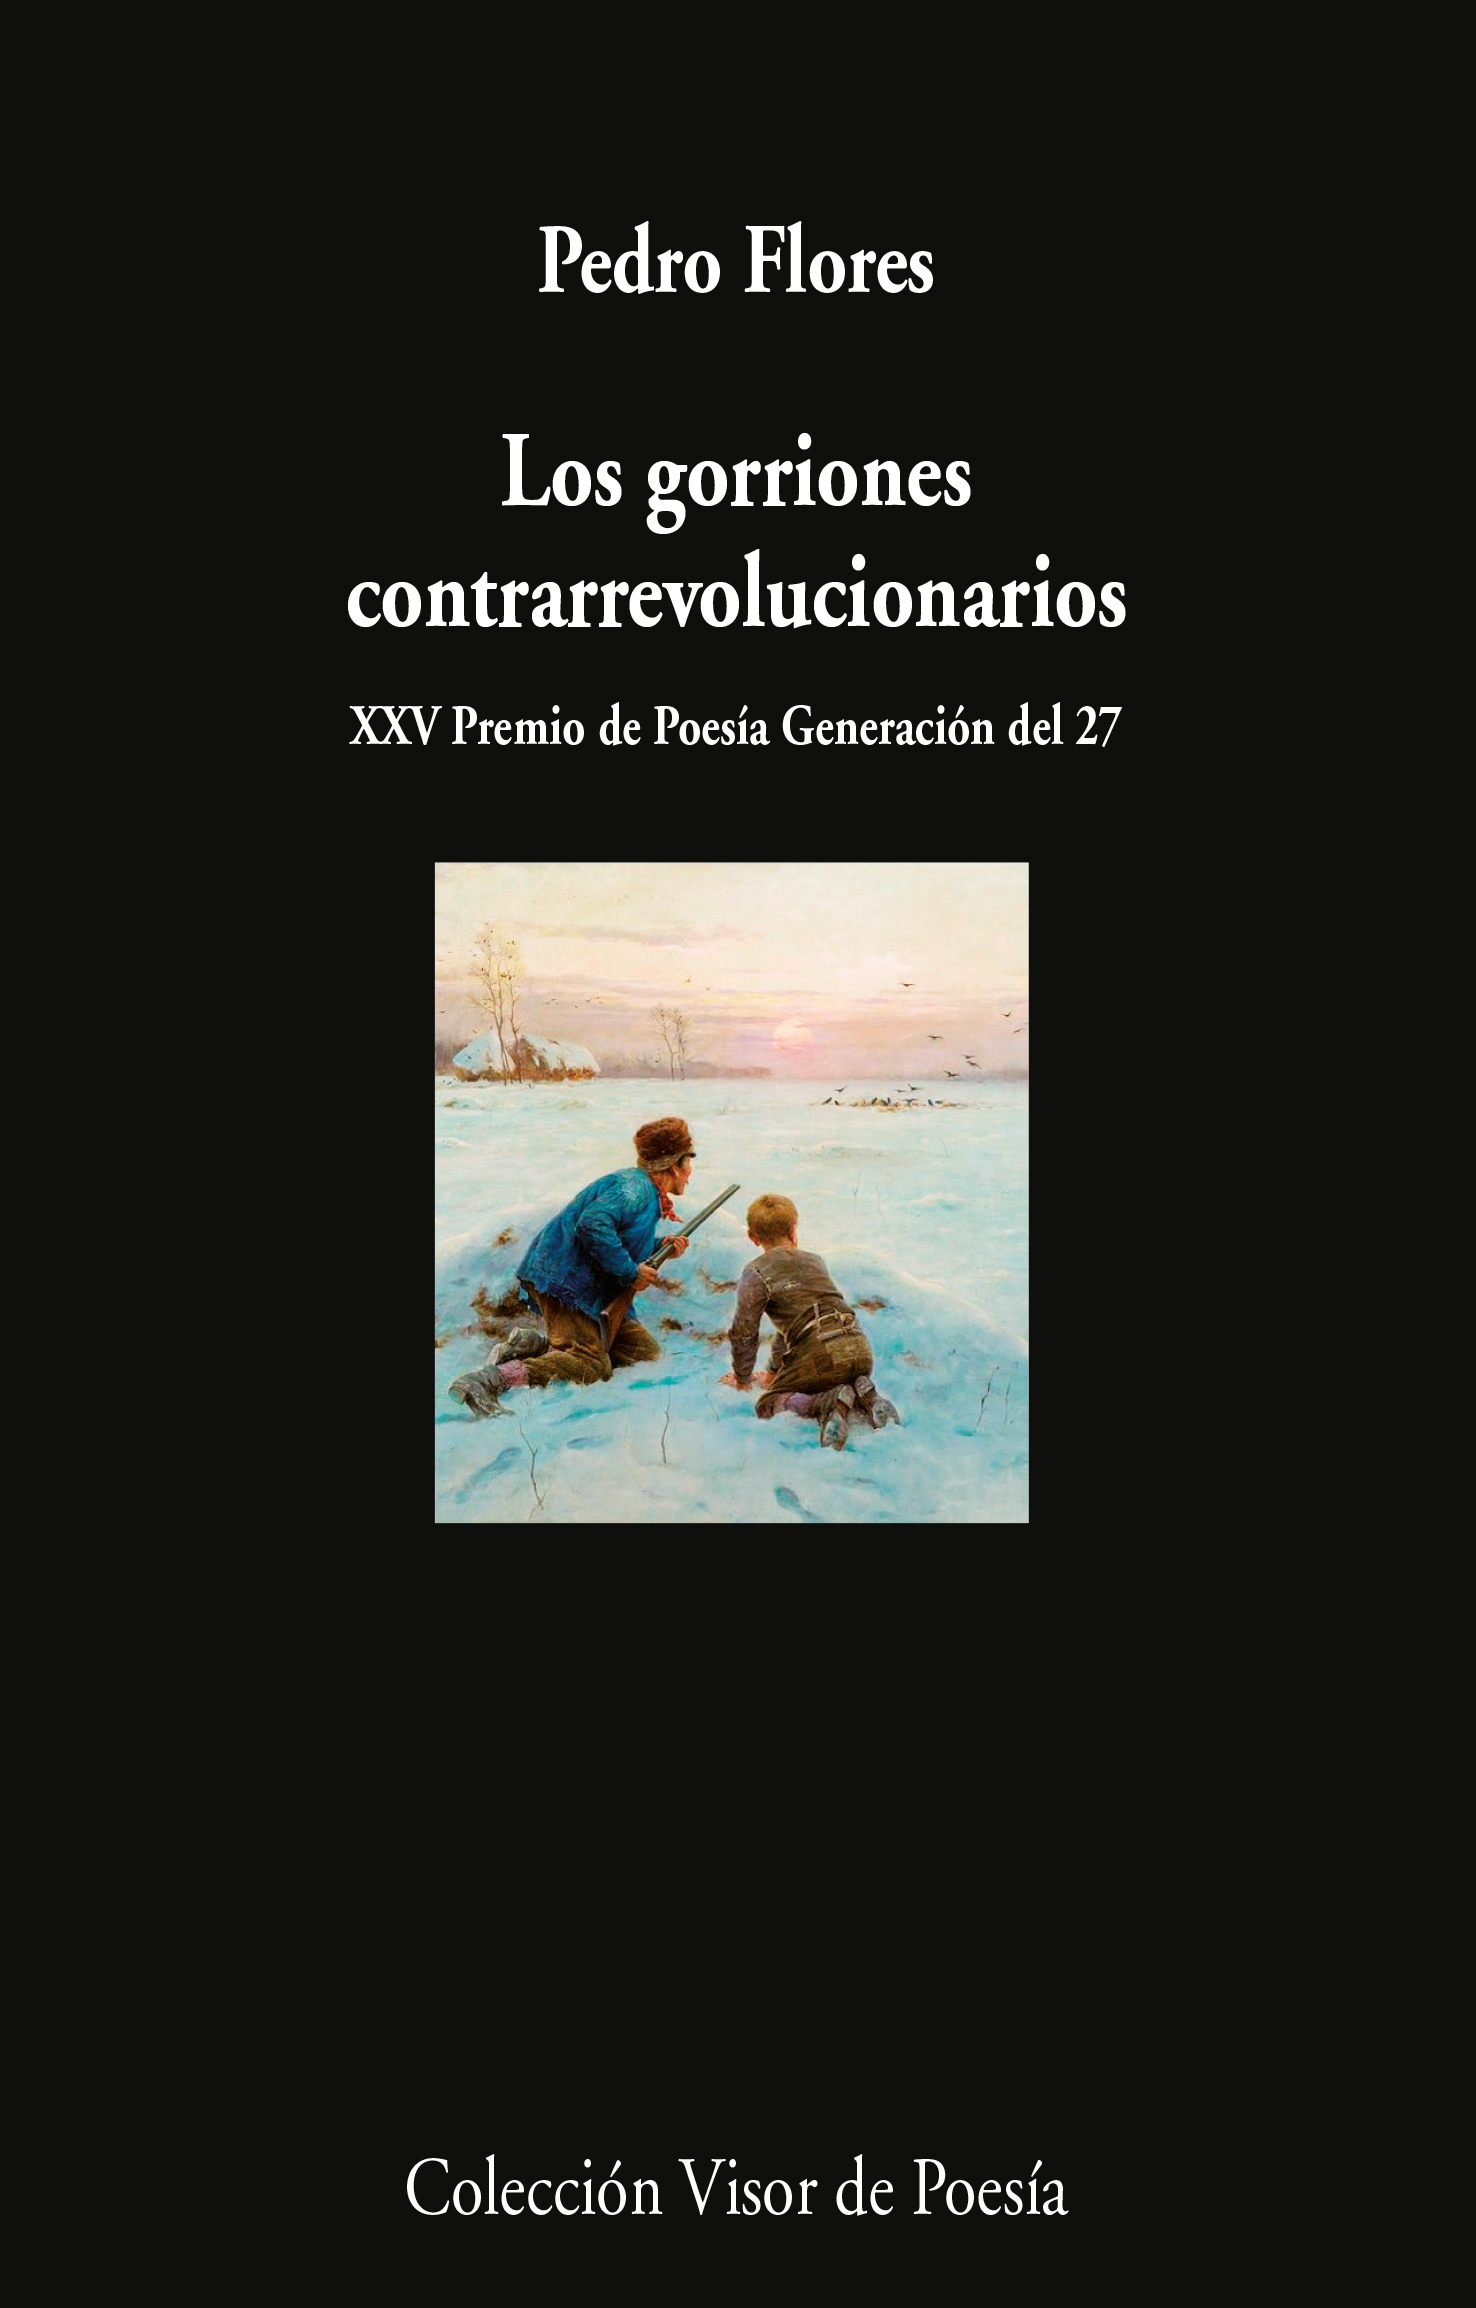 5 poemas de Los gorriones contrarrevolucionarios, de Pedro Flores